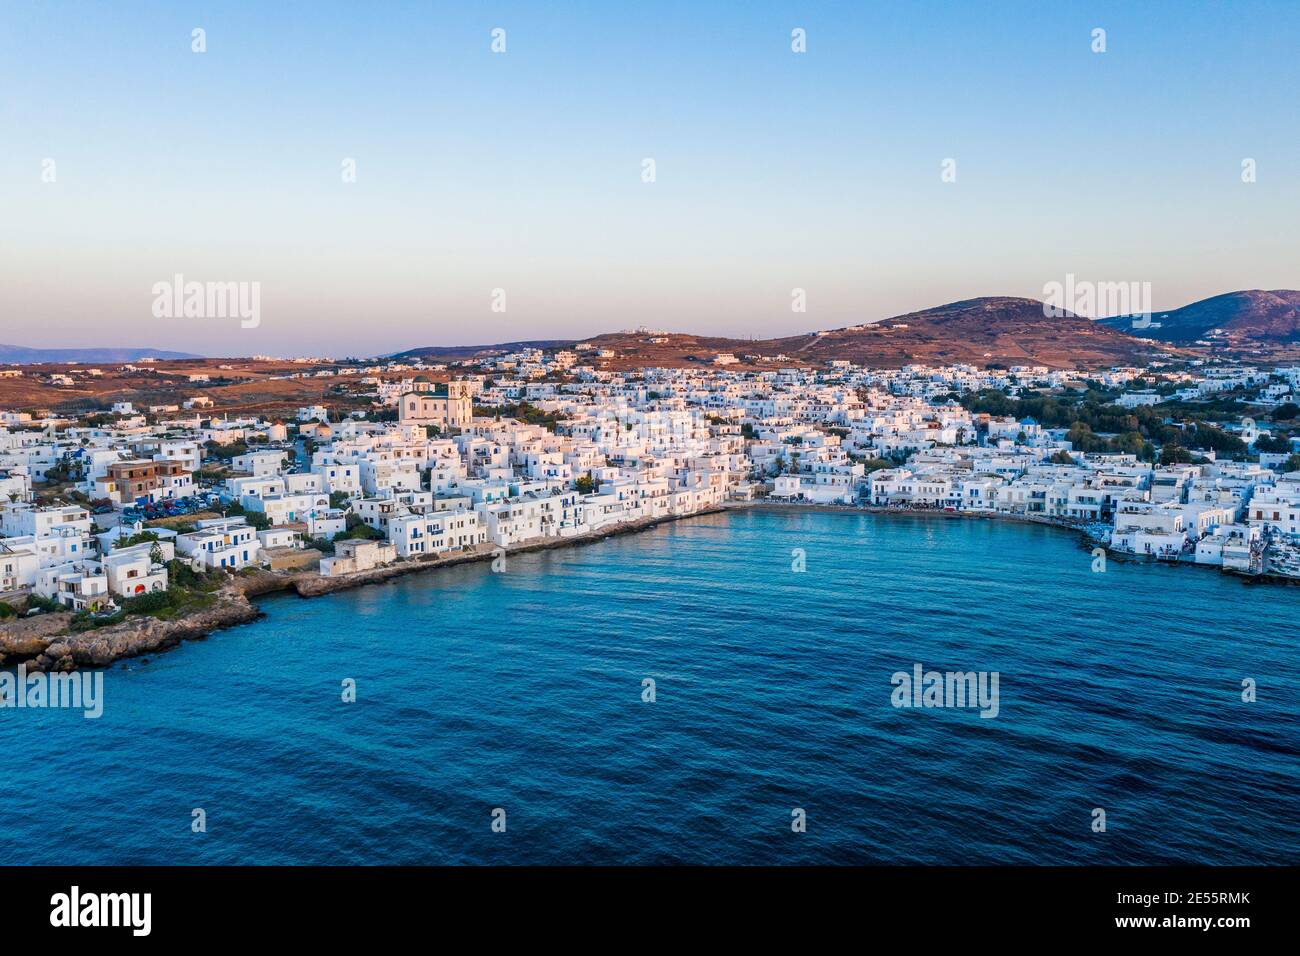 Disparo aéreo de la ciudad de Naousa en la isla griega de Paros. Foto de stock